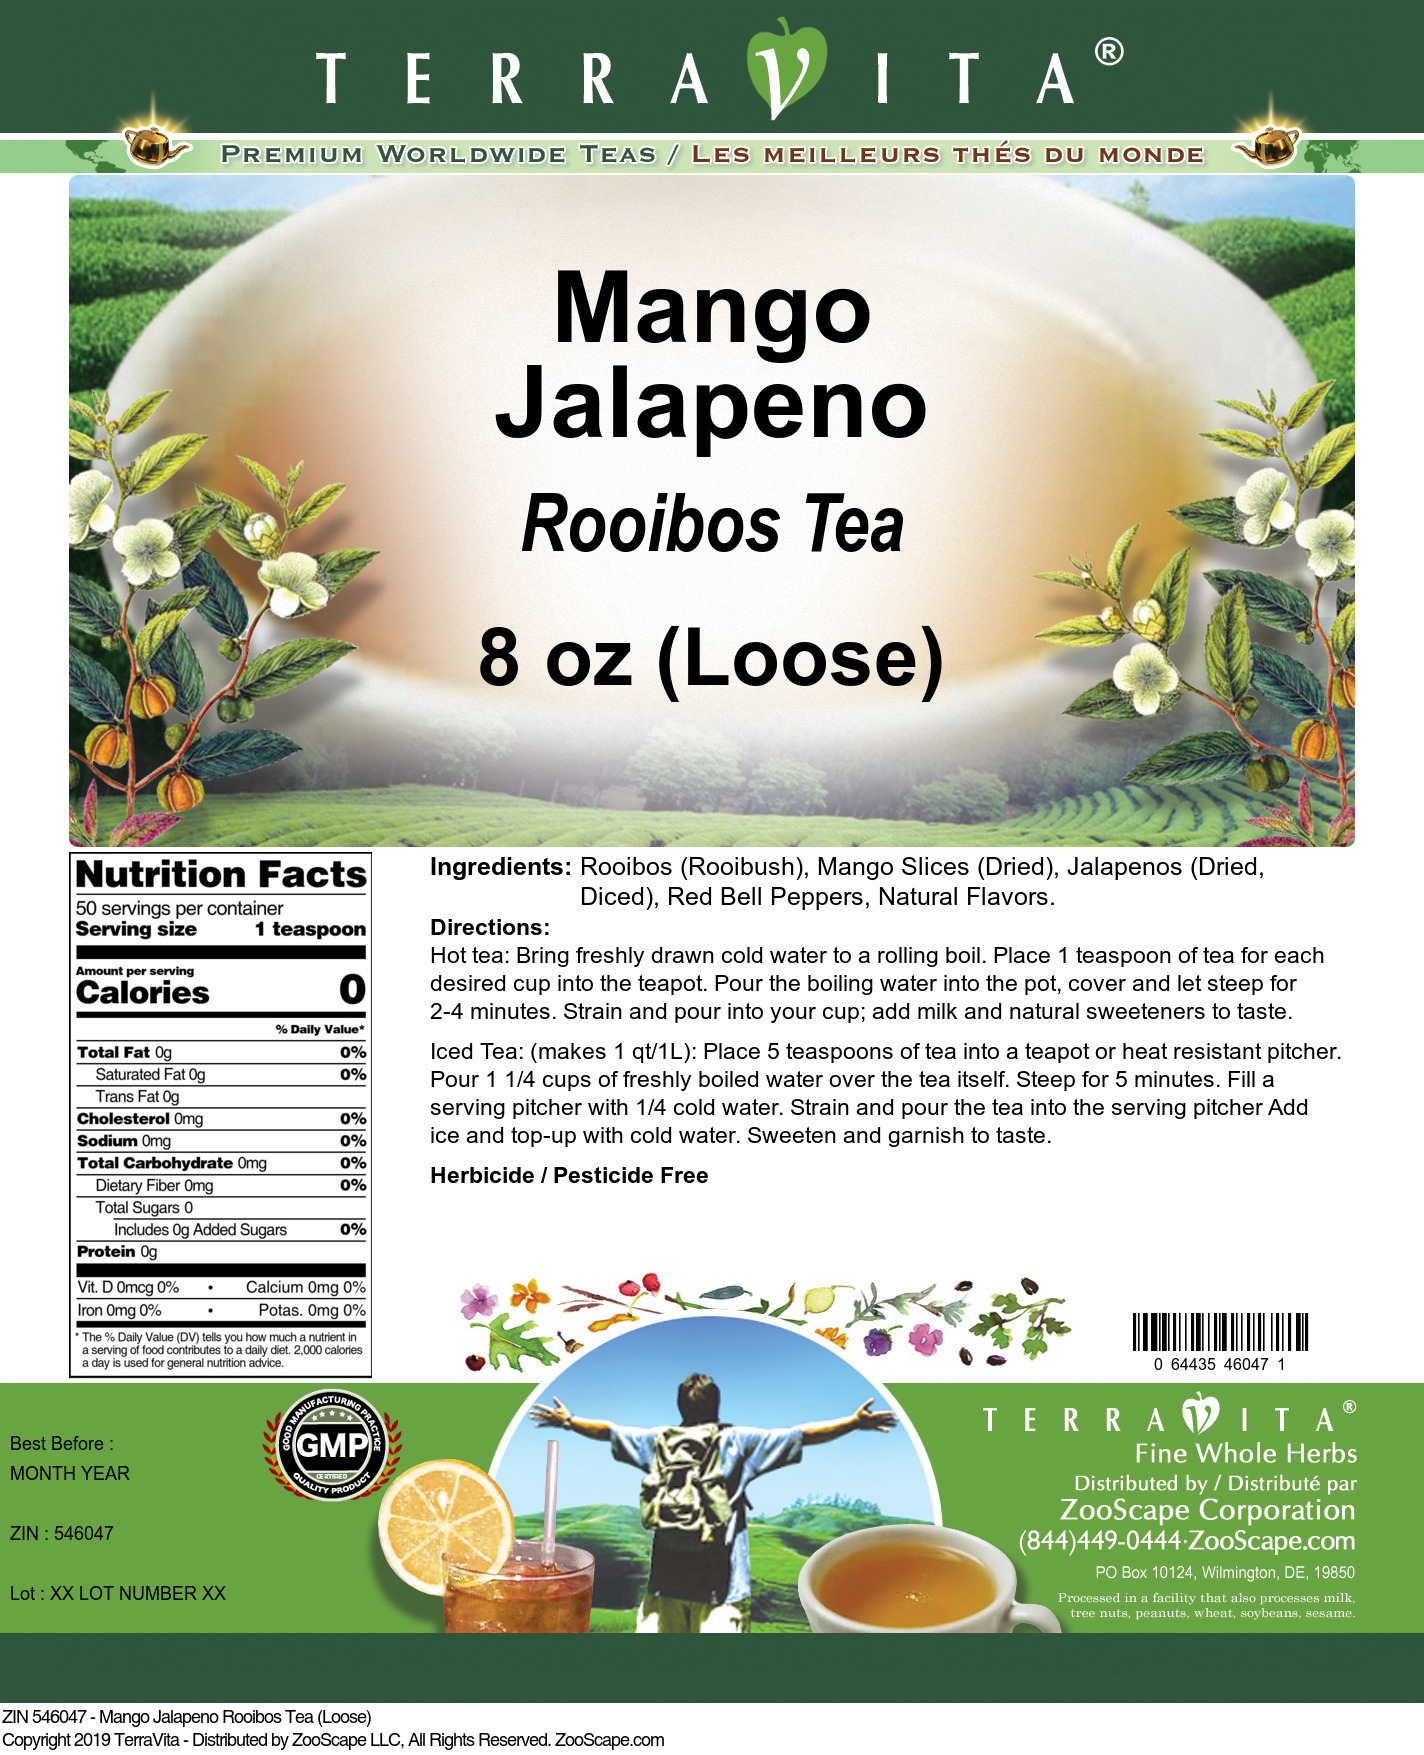 Mango Jalapeno Rooibos Tea (Loose) - Label